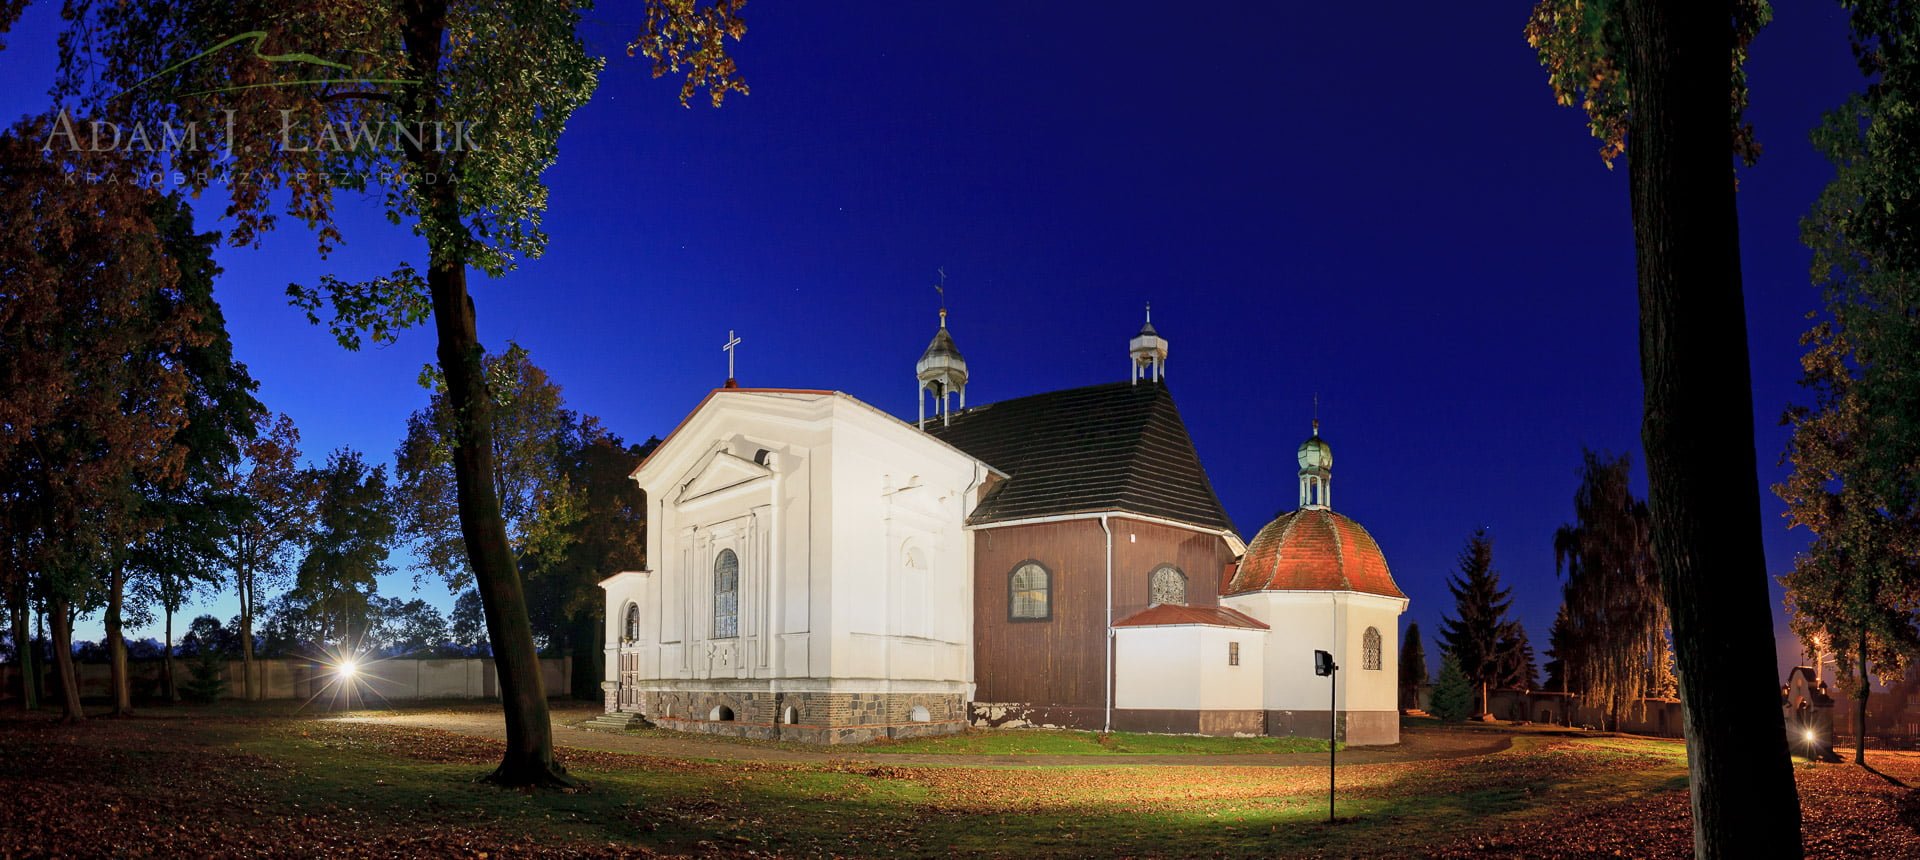 Panorama kościoła św. Jadwigi w Łodzi w gminie Stęszew